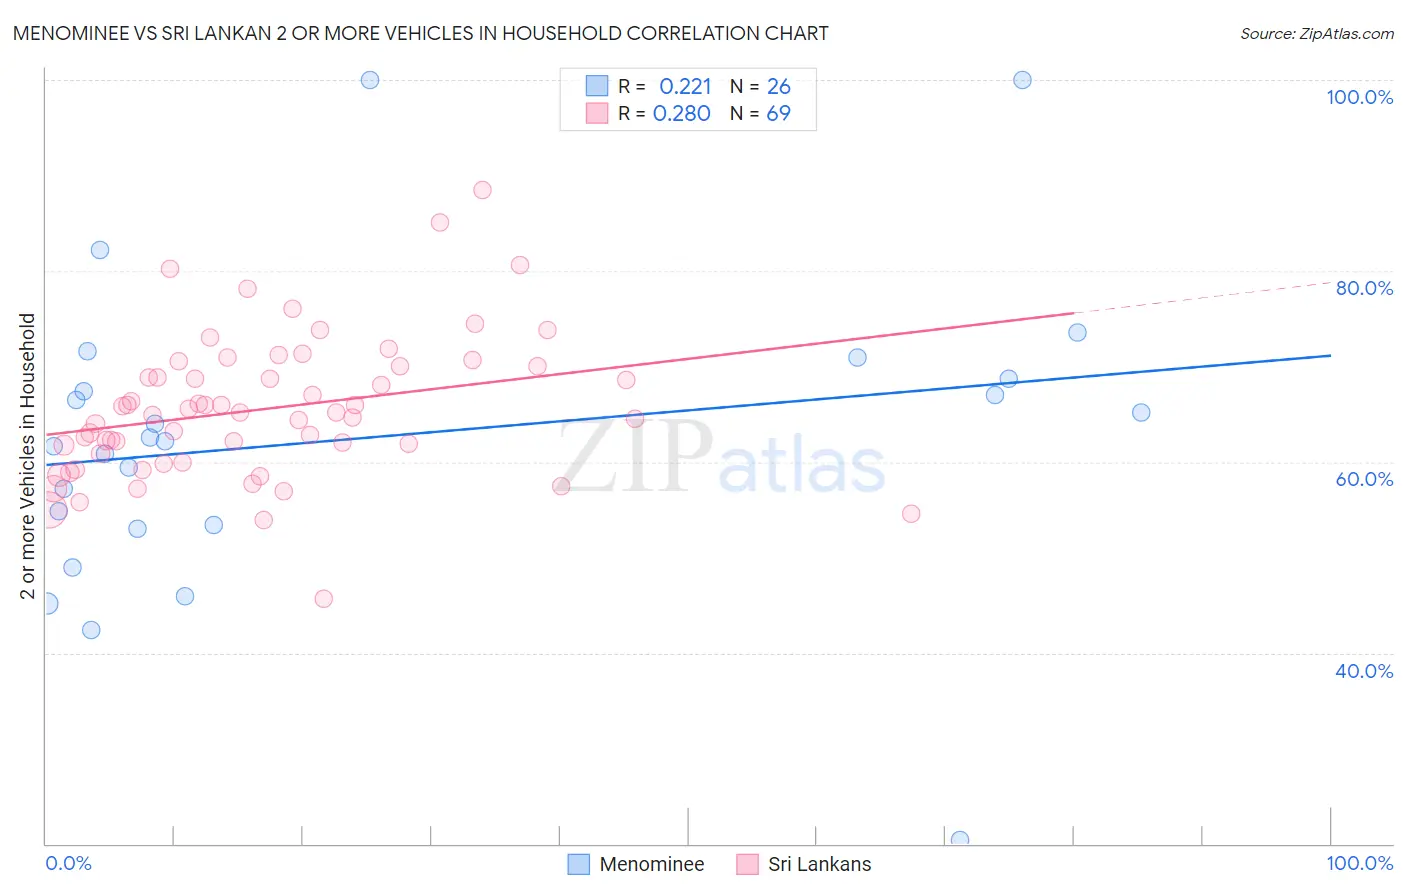 Menominee vs Sri Lankan 2 or more Vehicles in Household